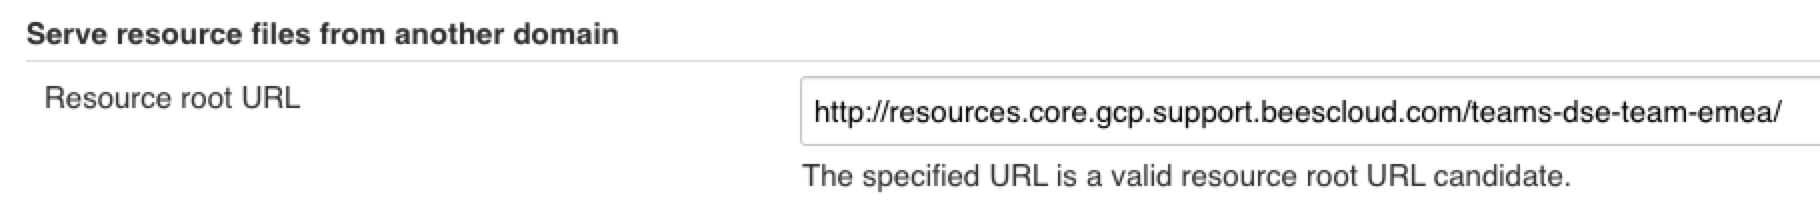 Resource root URL